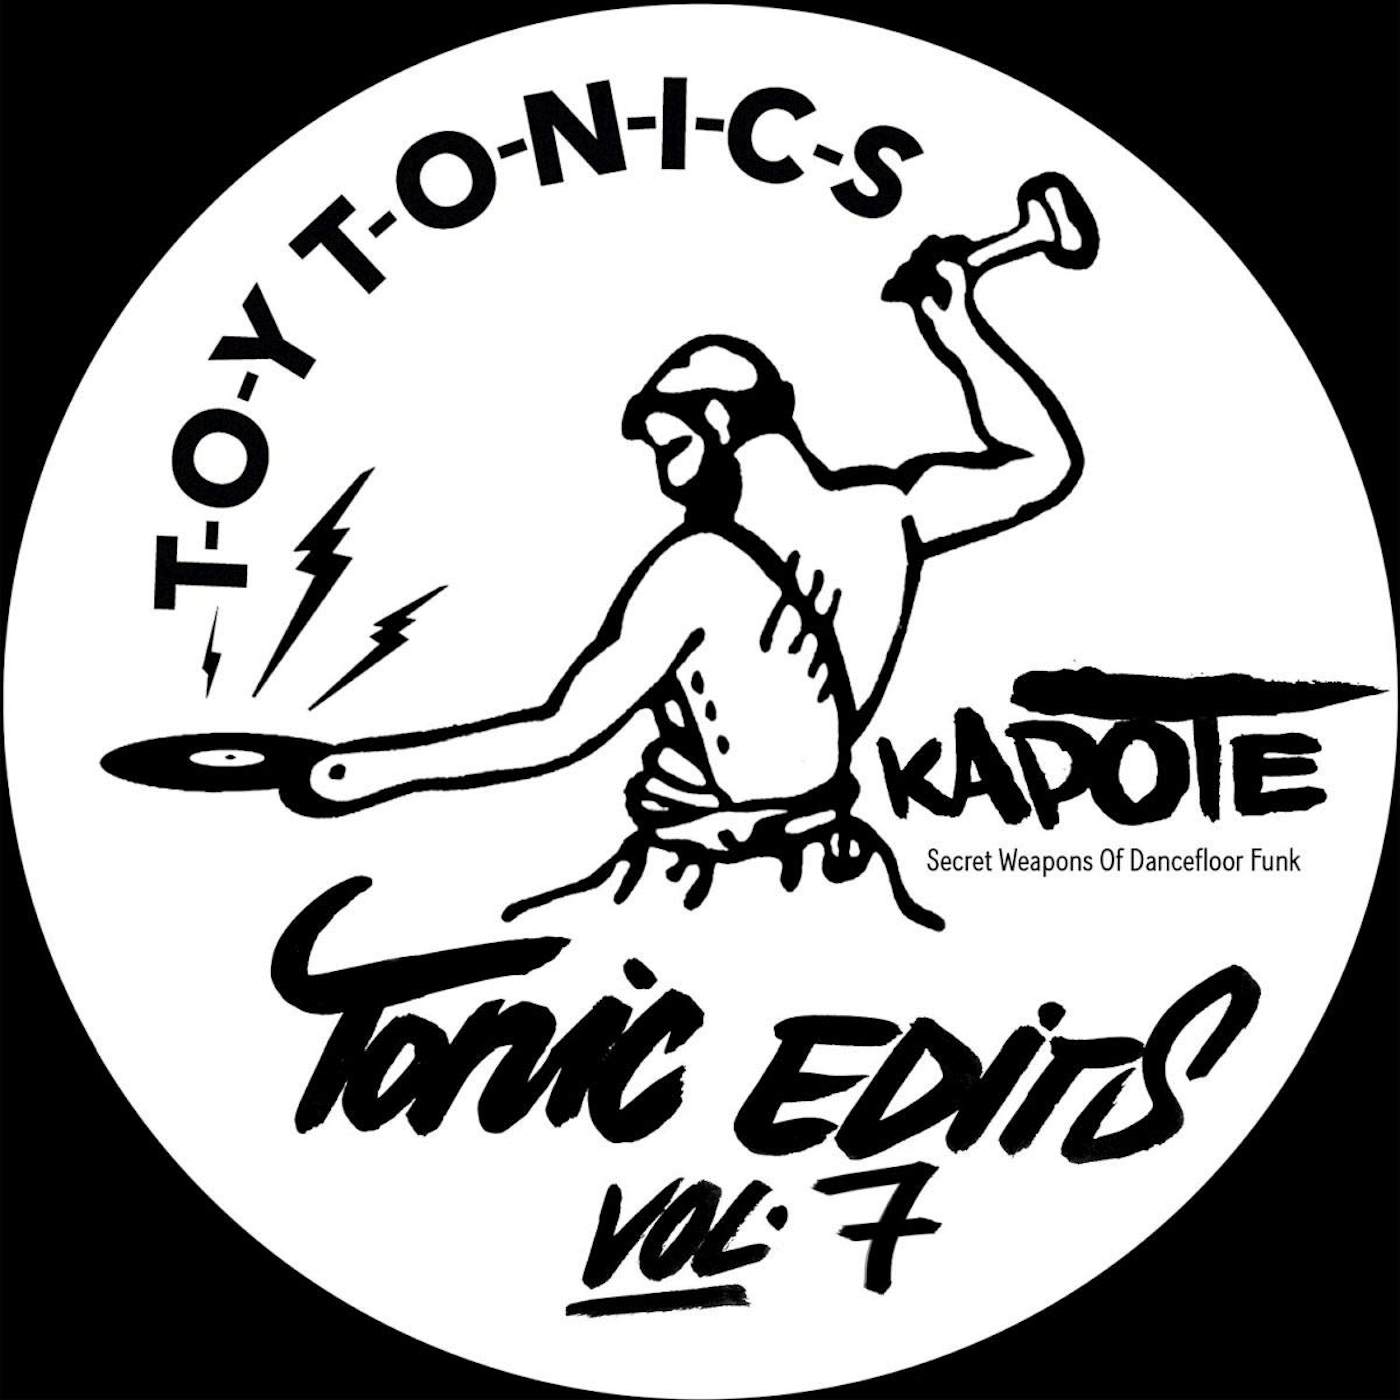 Kapote Tonics Edits Vol. 7 Vinyl Record